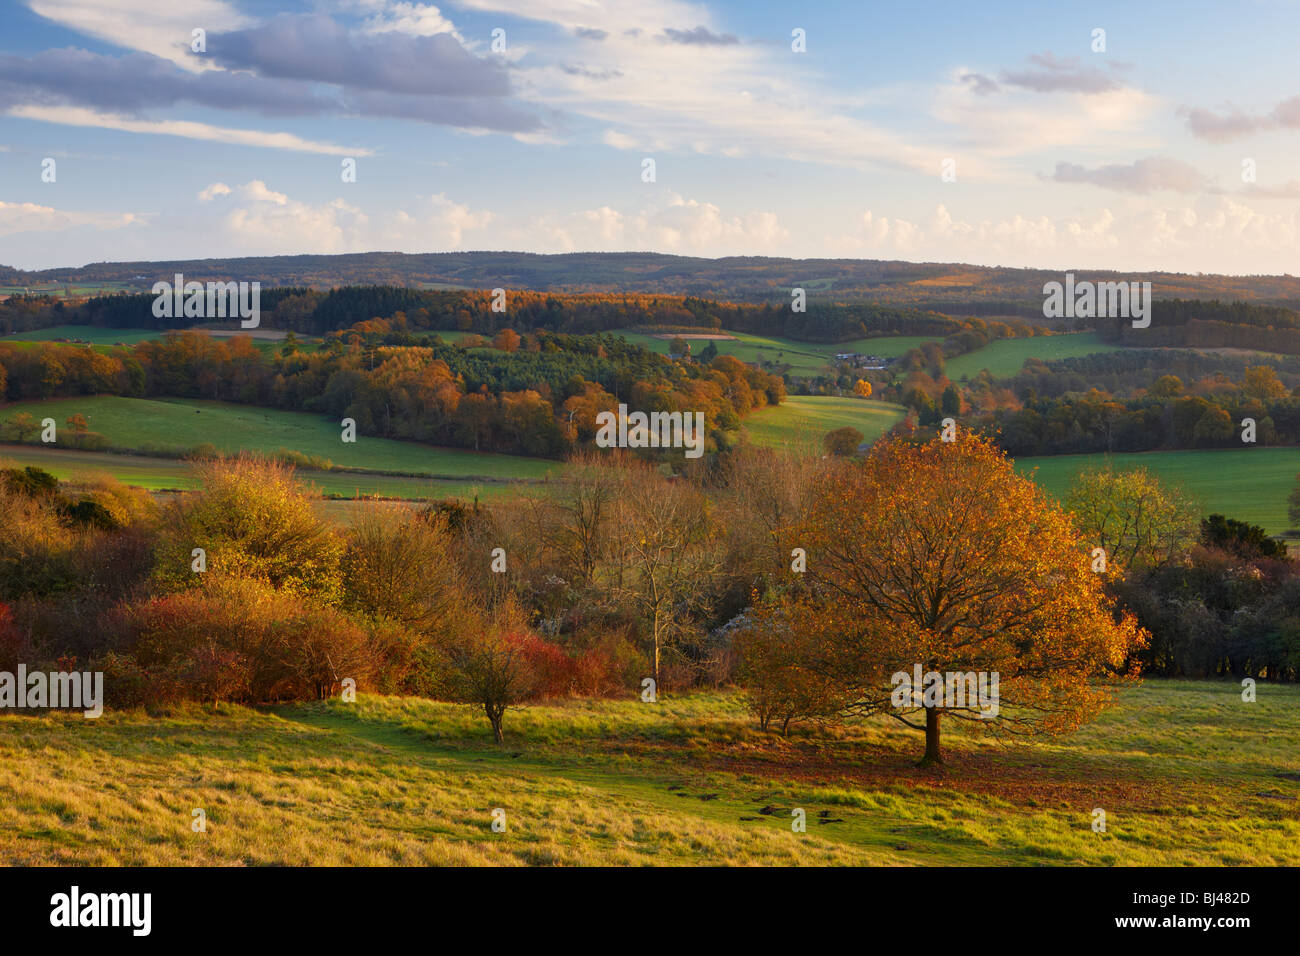 Vista desde la esquina de Newlands mirando hacia Albury, North Downs camino de Surrey. La cálida luz del sol destacando los tonos de otoño. Foto de stock